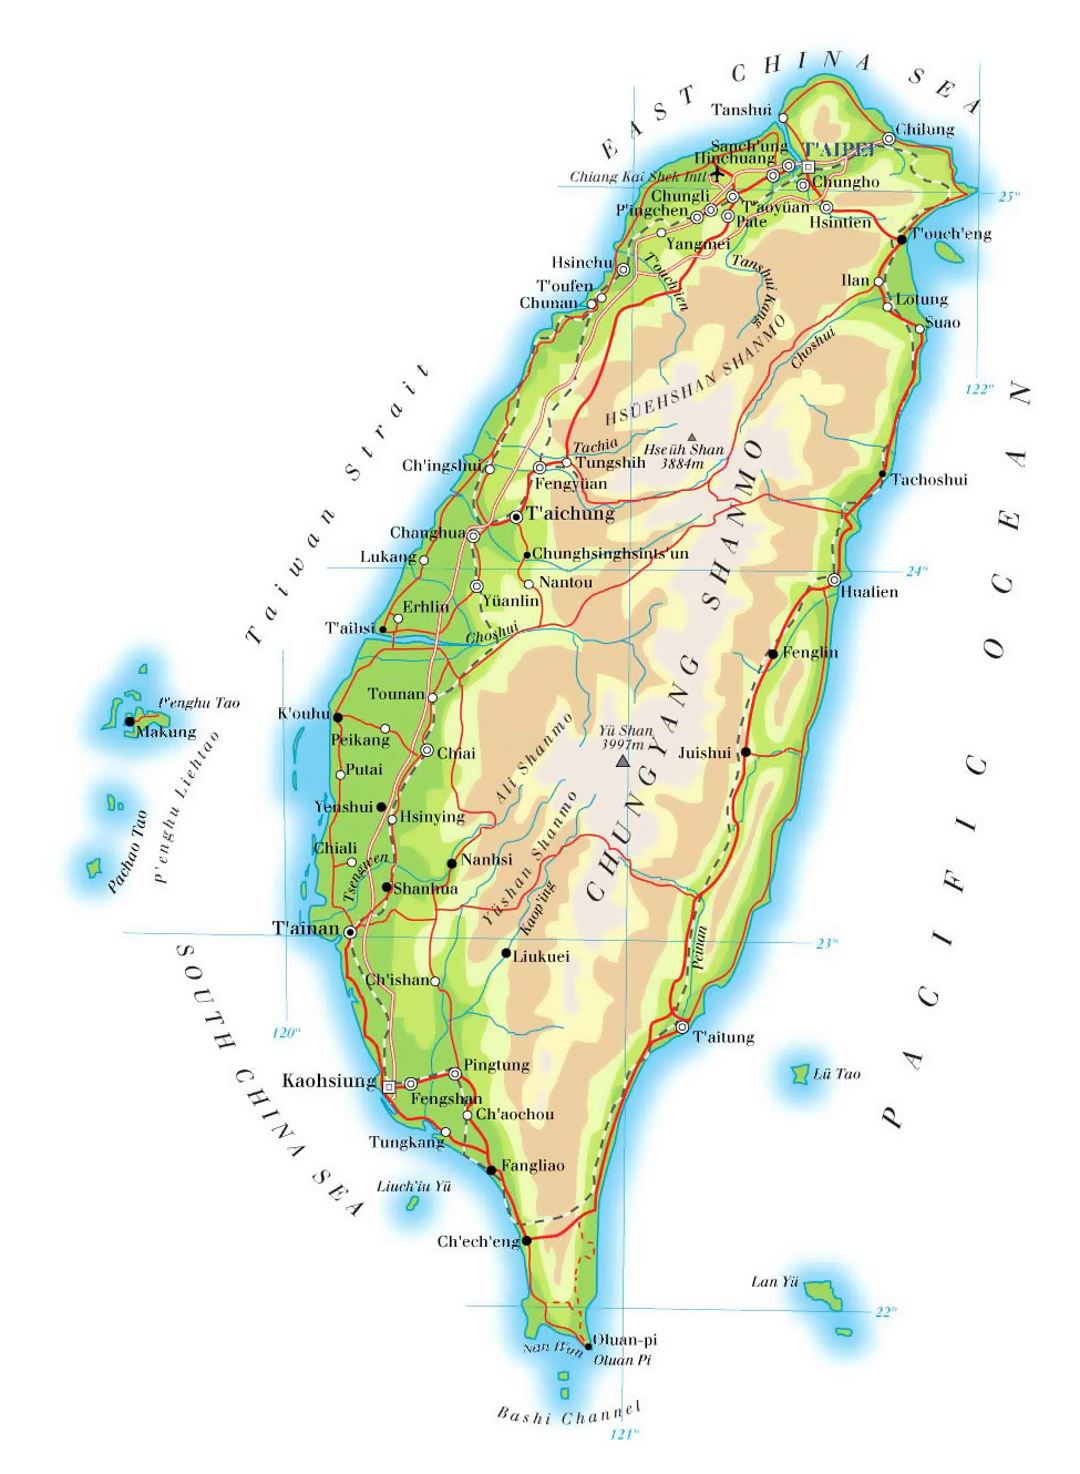 Детальная карта высот Тайваня с дорогами, железными дорогами, городами и аэропортами